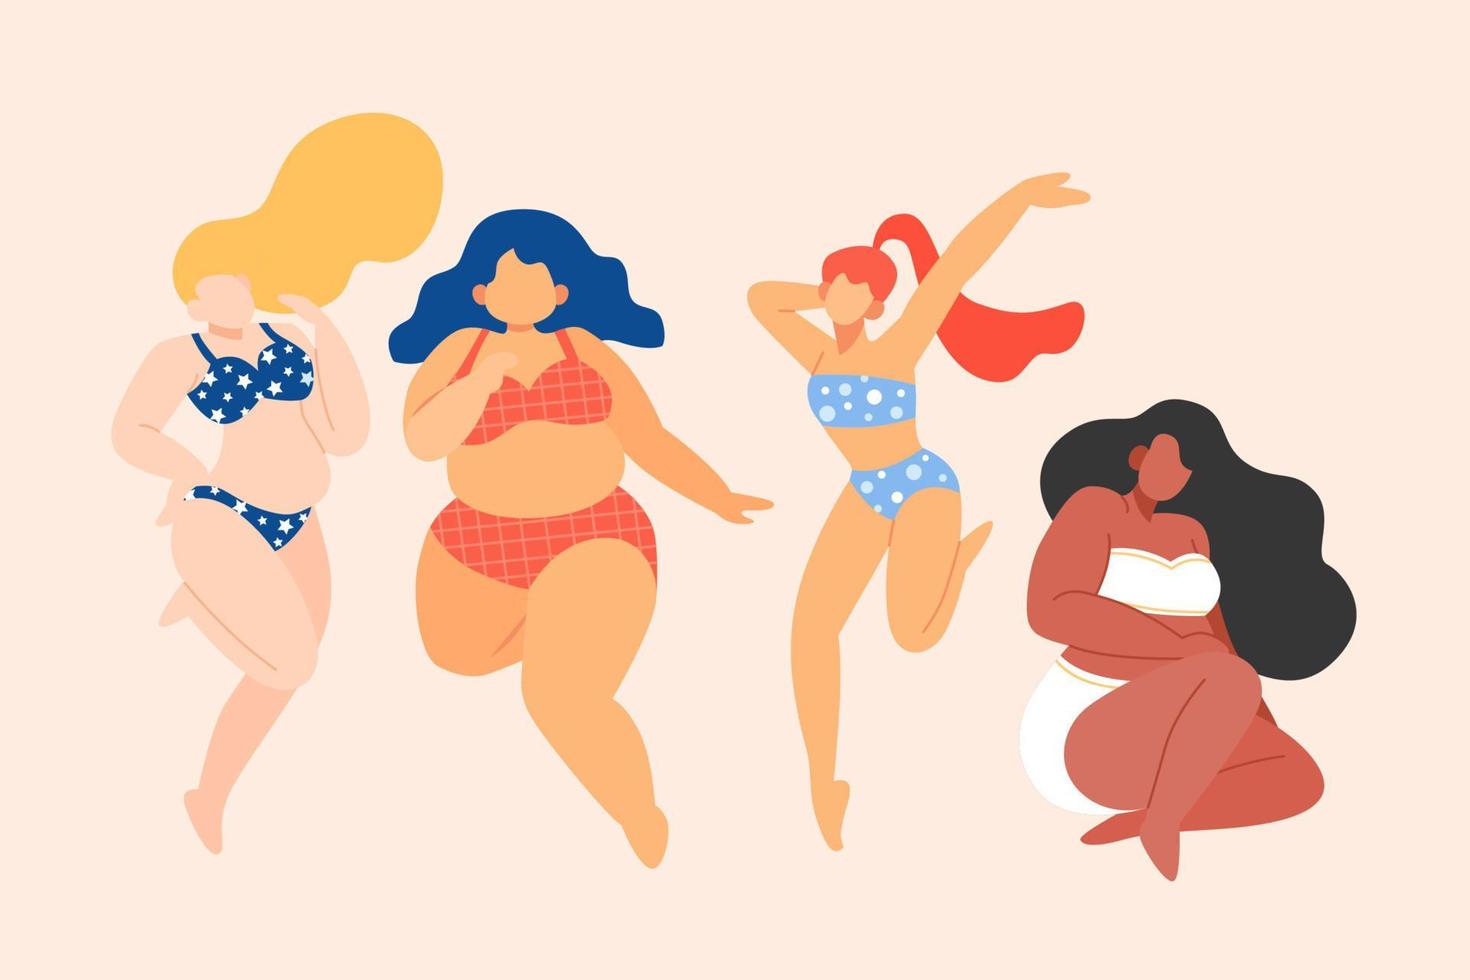 plano ilustração do auto amor do tamanho grande mulheres. grupo do fêmea vestindo lingerie, sutiã e bikini com coração, a conceito do corpo positividade vetor